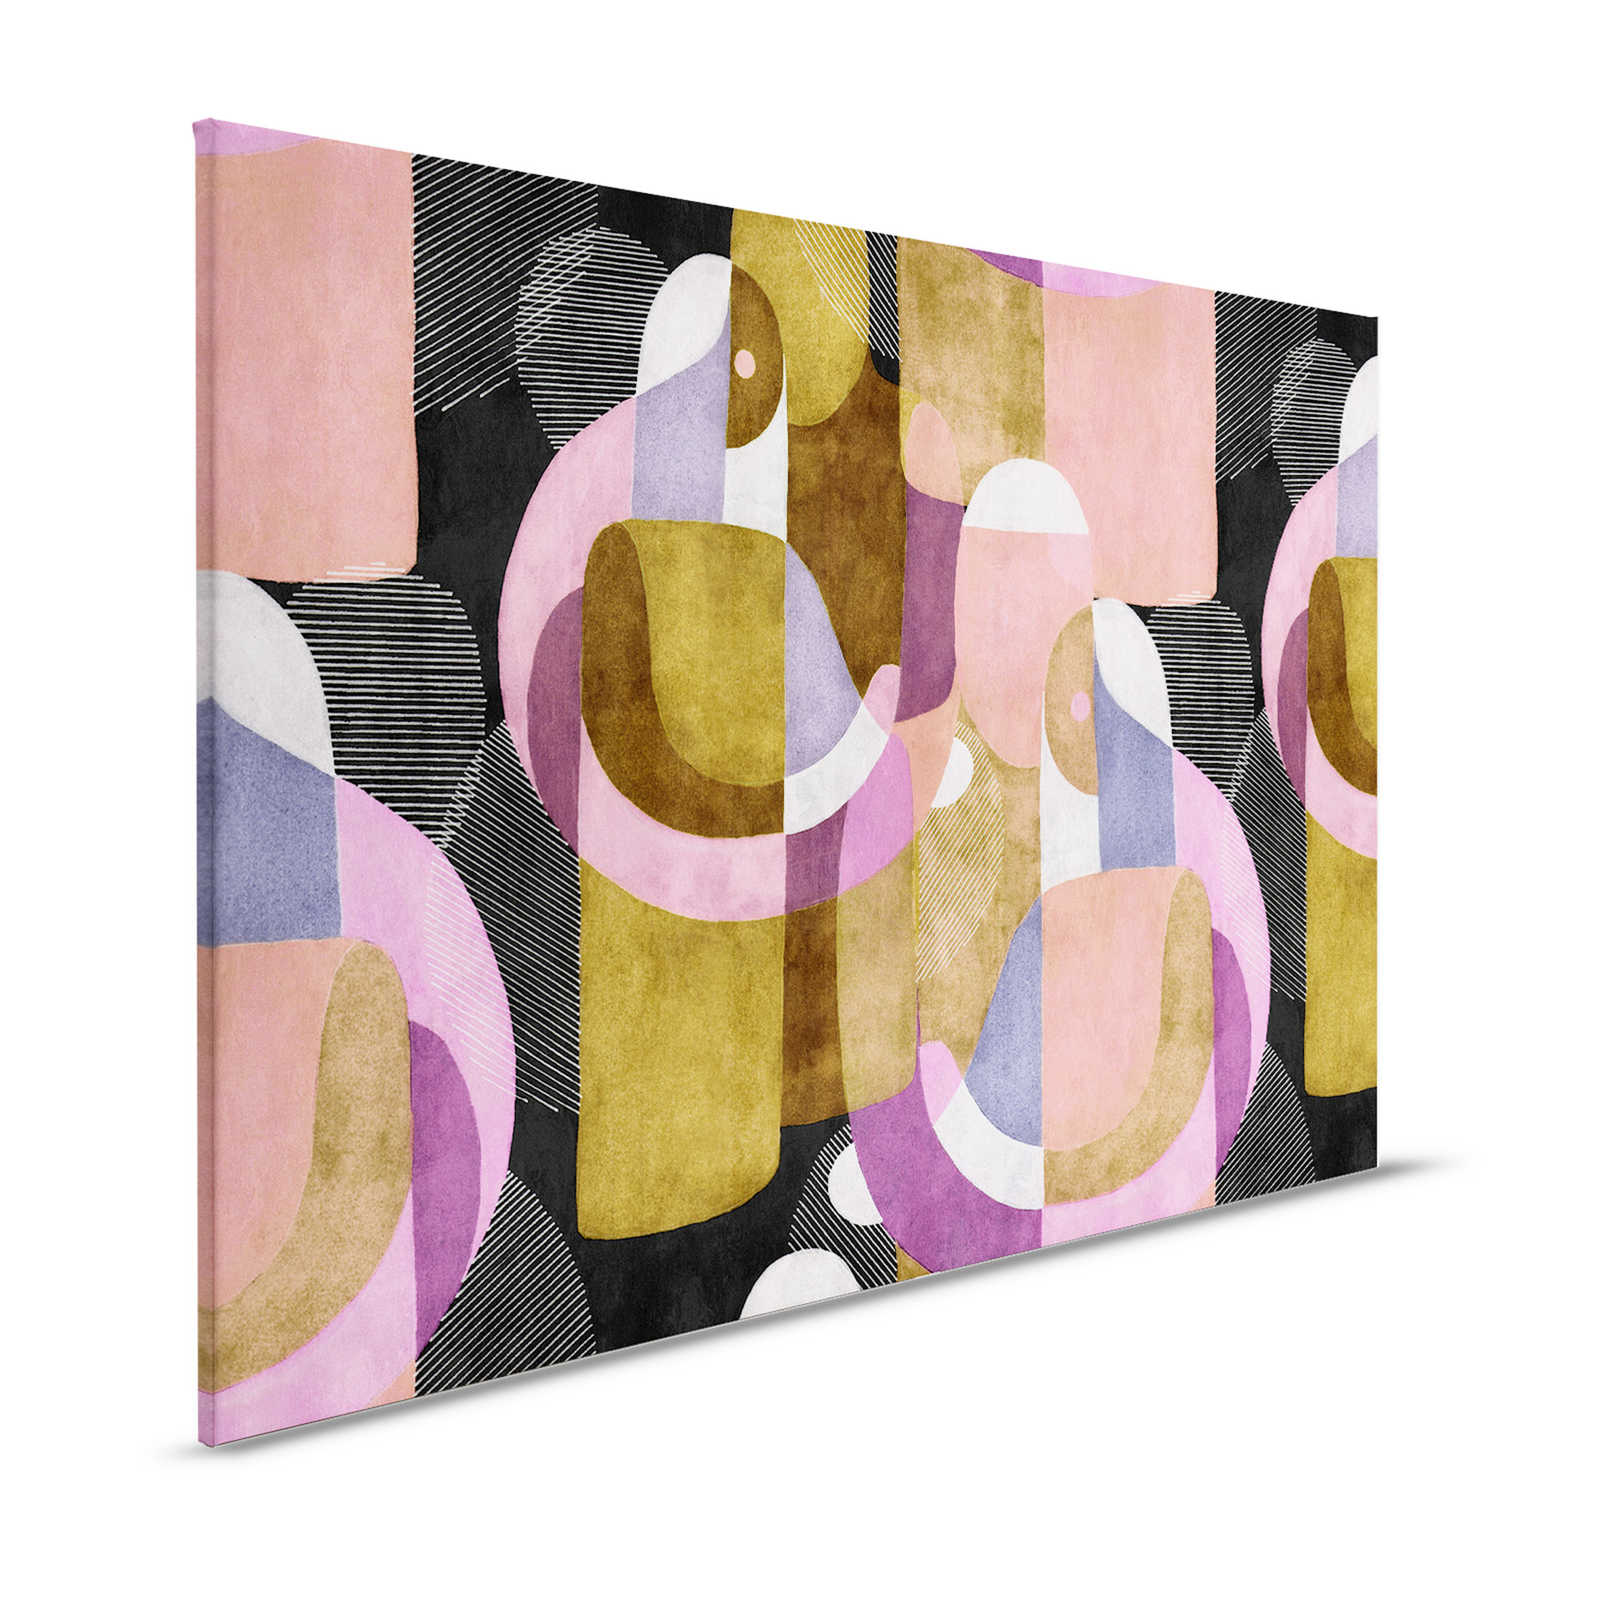 Luogo d'incontro 3 - Quadro su tela Etno design in stile Colour Block colorato - 1,20 m x 0,80 m
